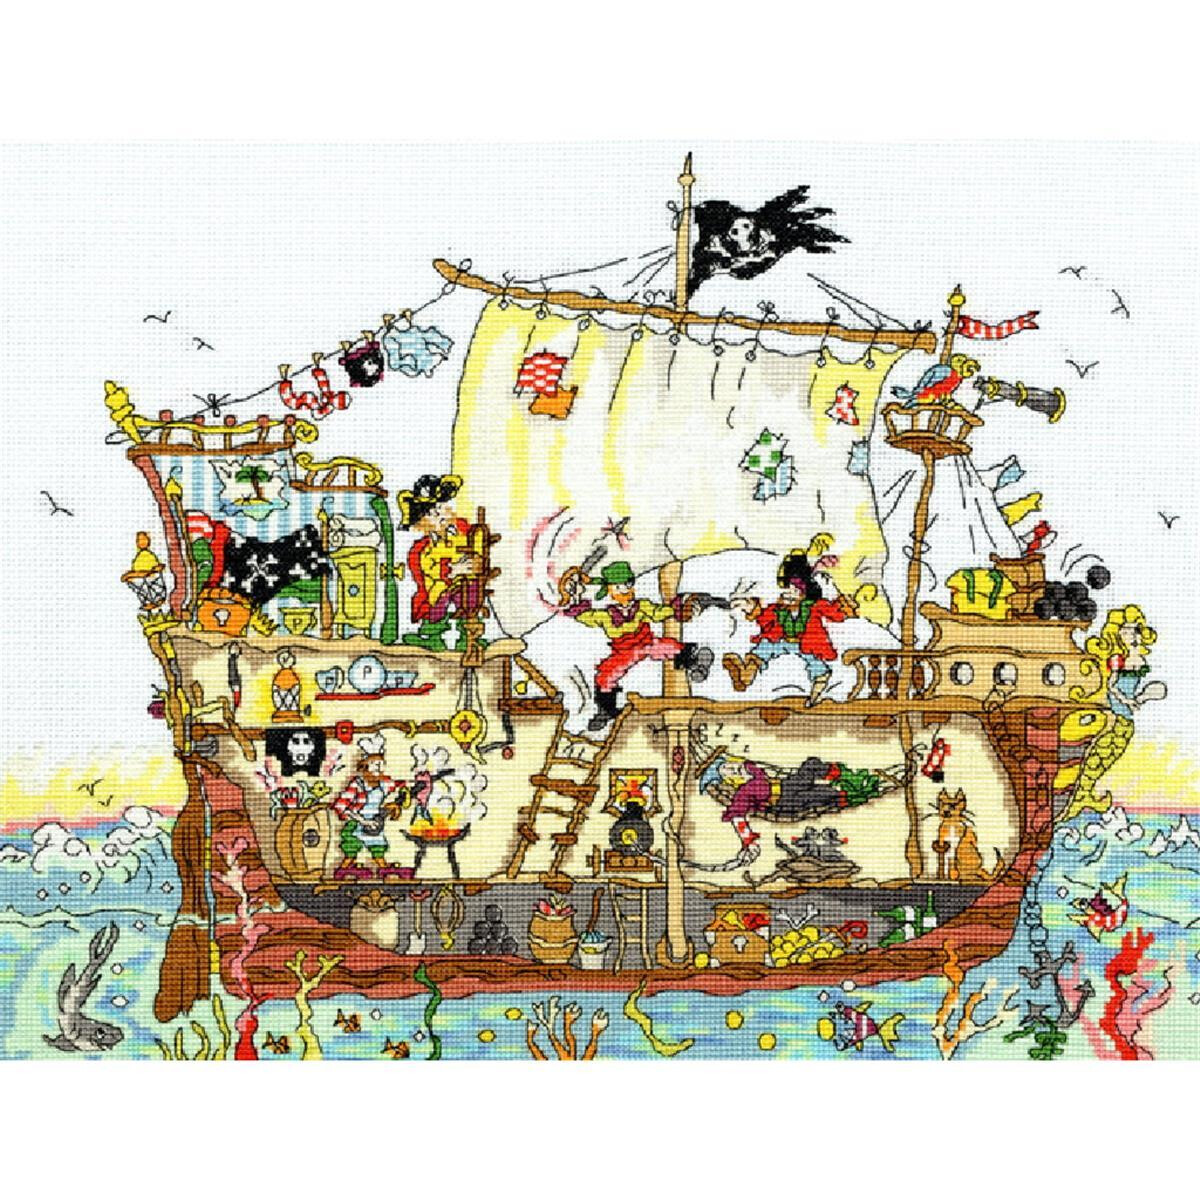 Nave pirata illustrata in mare con a bordo vari pirati...